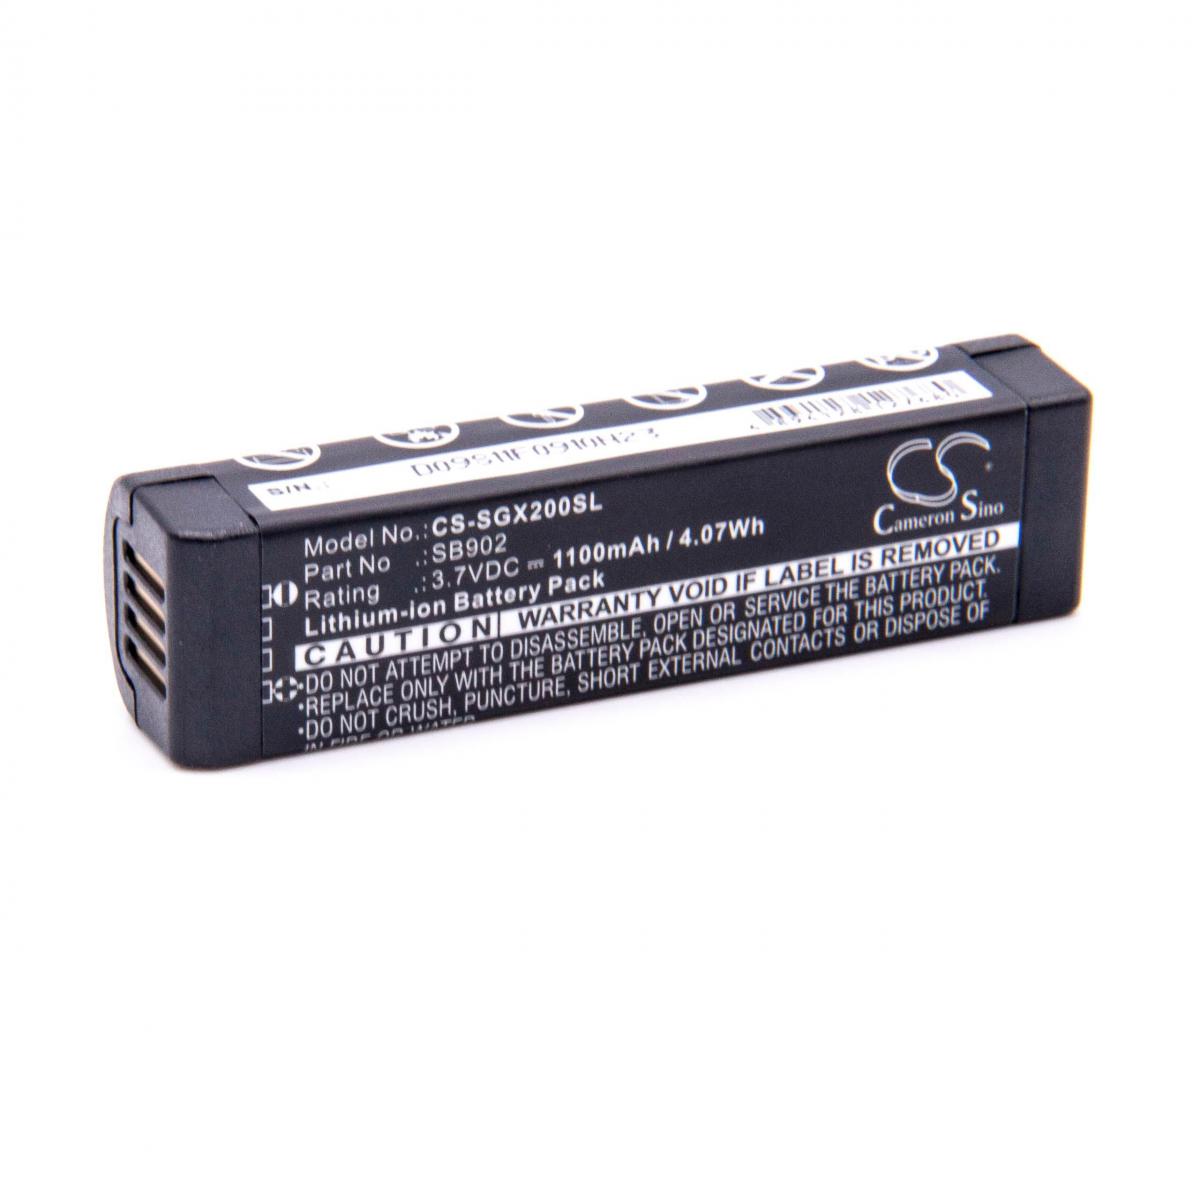 Vhbw - vhbw Li-Ion batterie 1100mAh (3.7V) pour émetteur de poche comme Shure SB902 - Batteries électroniques